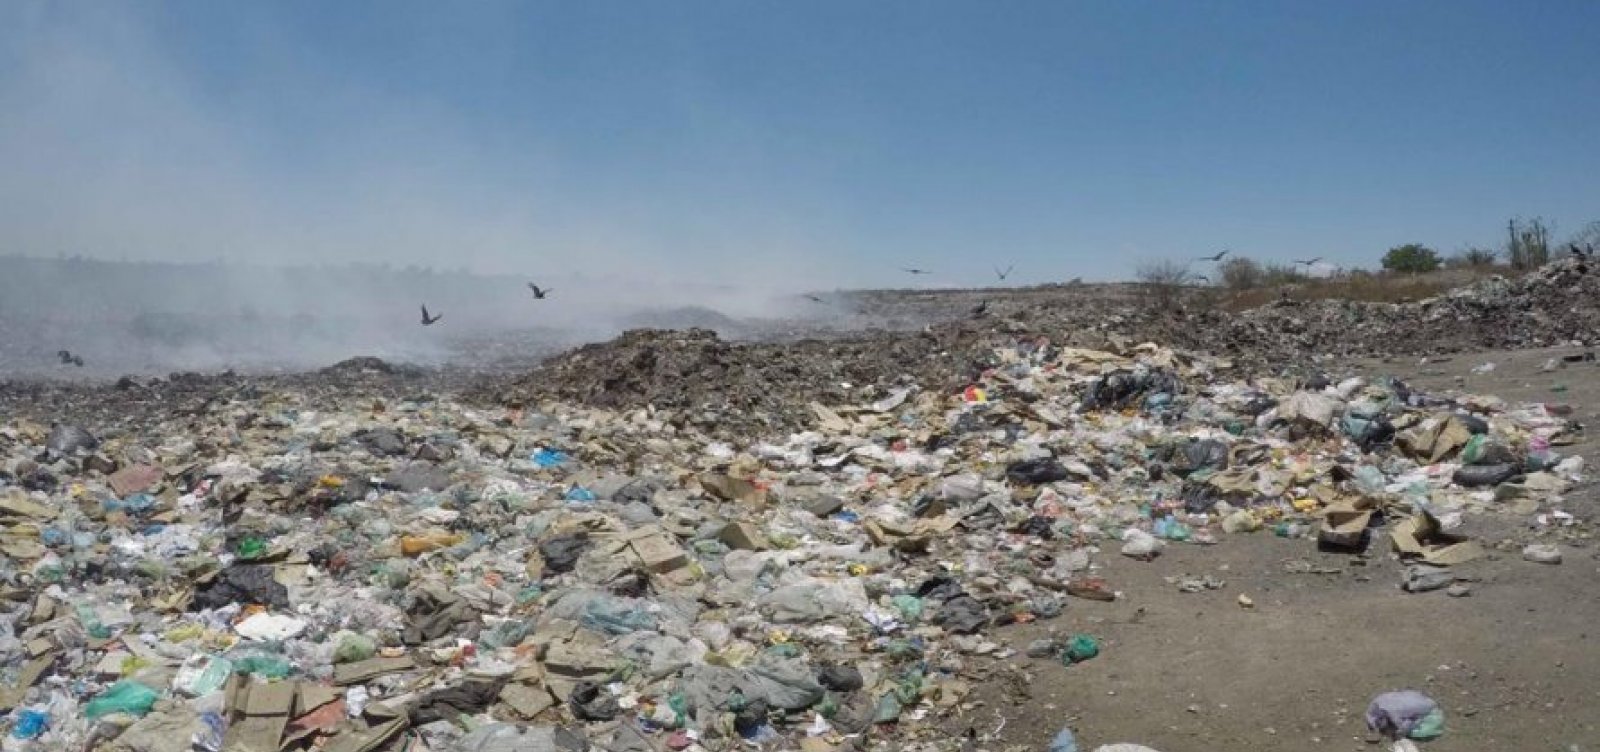 Campo Formoso: MP denuncia prefeitura por descarte irregular do lixo e pede multa de R$ 10mi